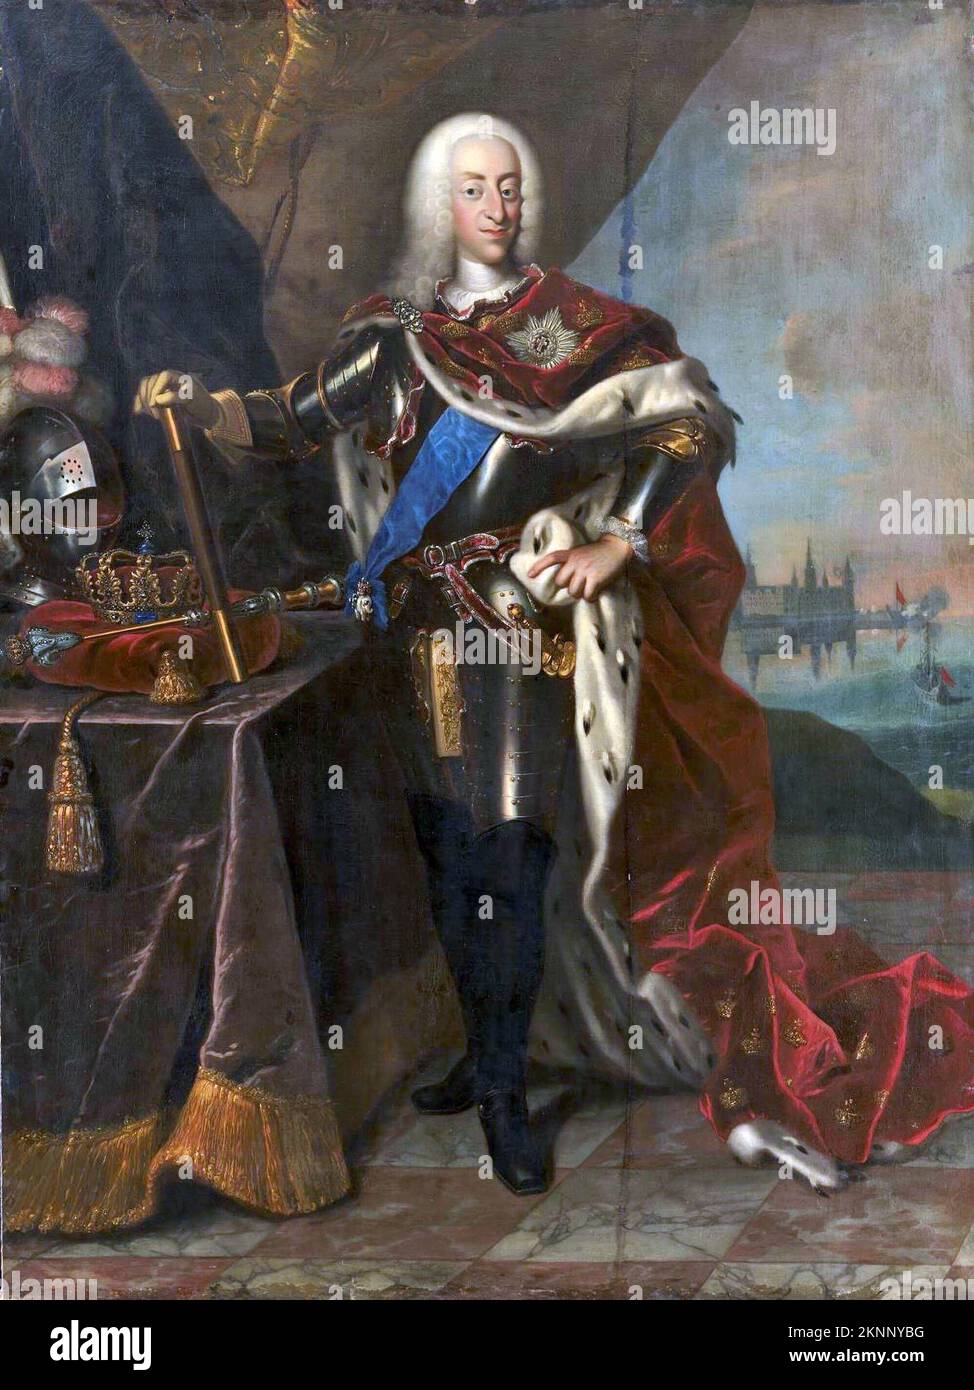 Portrait de Christian VI du Danemark (1699-1746) Christian VI, roi du Danemark et de Norvège de 1730 à 1746. Peinture de Johann Salomon Wahl Banque D'Images